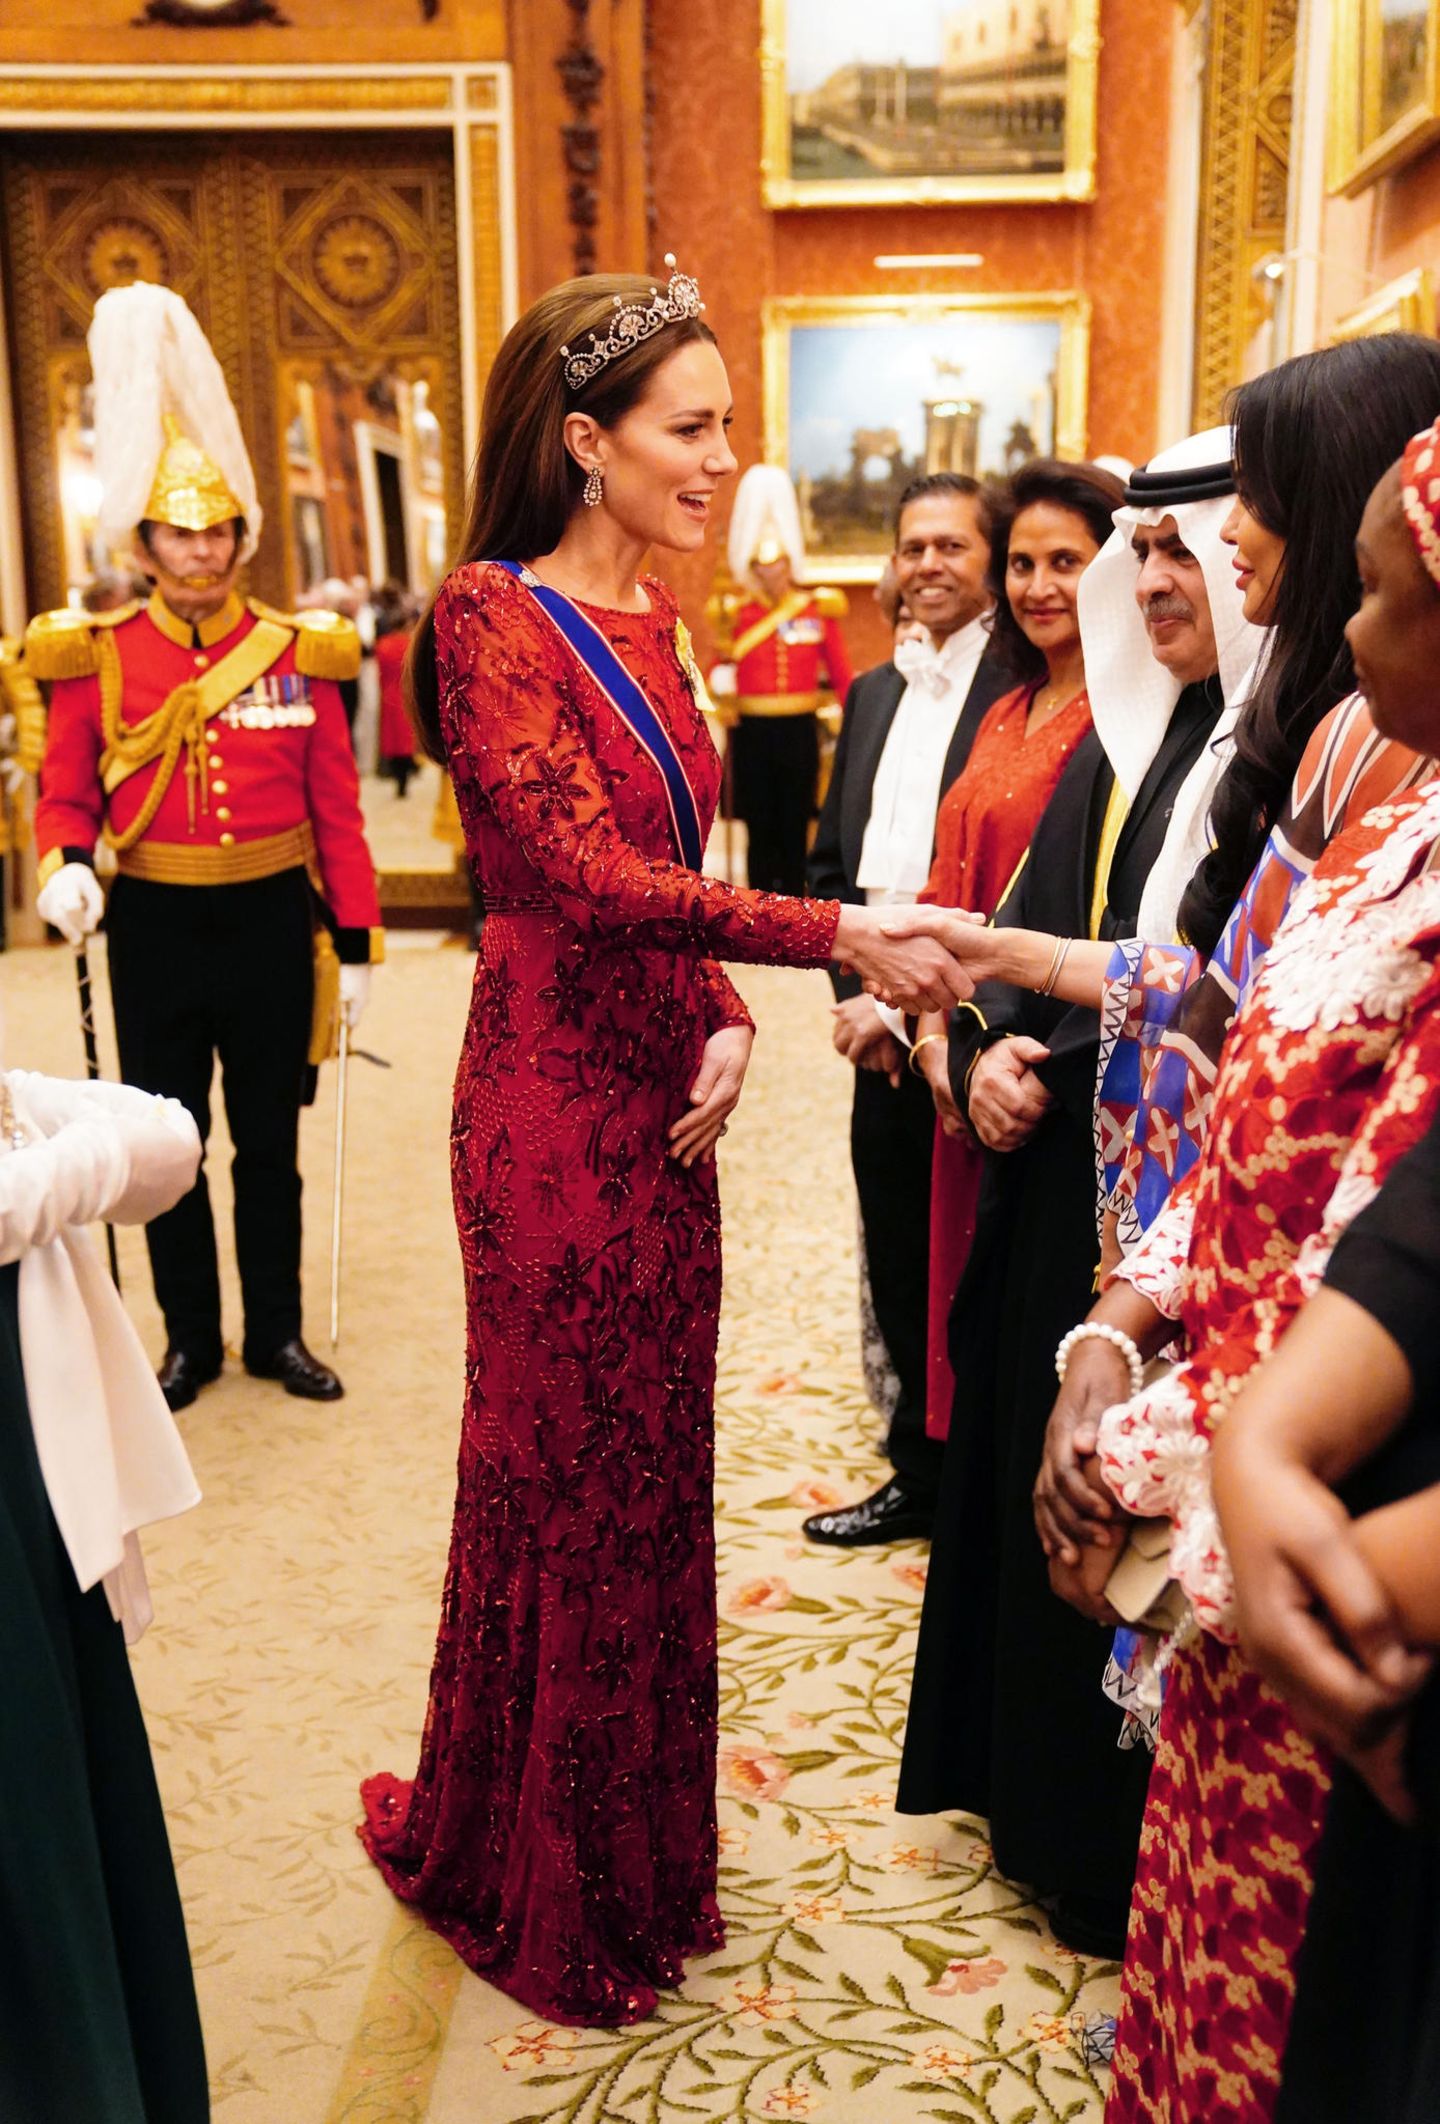 Catherine, Princess of Wales, setzt beim Empfang des diplomatischen Korps auf einen neuen Look. Für den besonderen Anlass trägt sie eine rote Robe von Jenny Packham mit aufwendigen Stickereien. Sowohl die Farbe als auch die Motive passen in die Vorweihnachtszeit. Aber nicht nur das Kleid ist ein Hingucker ...